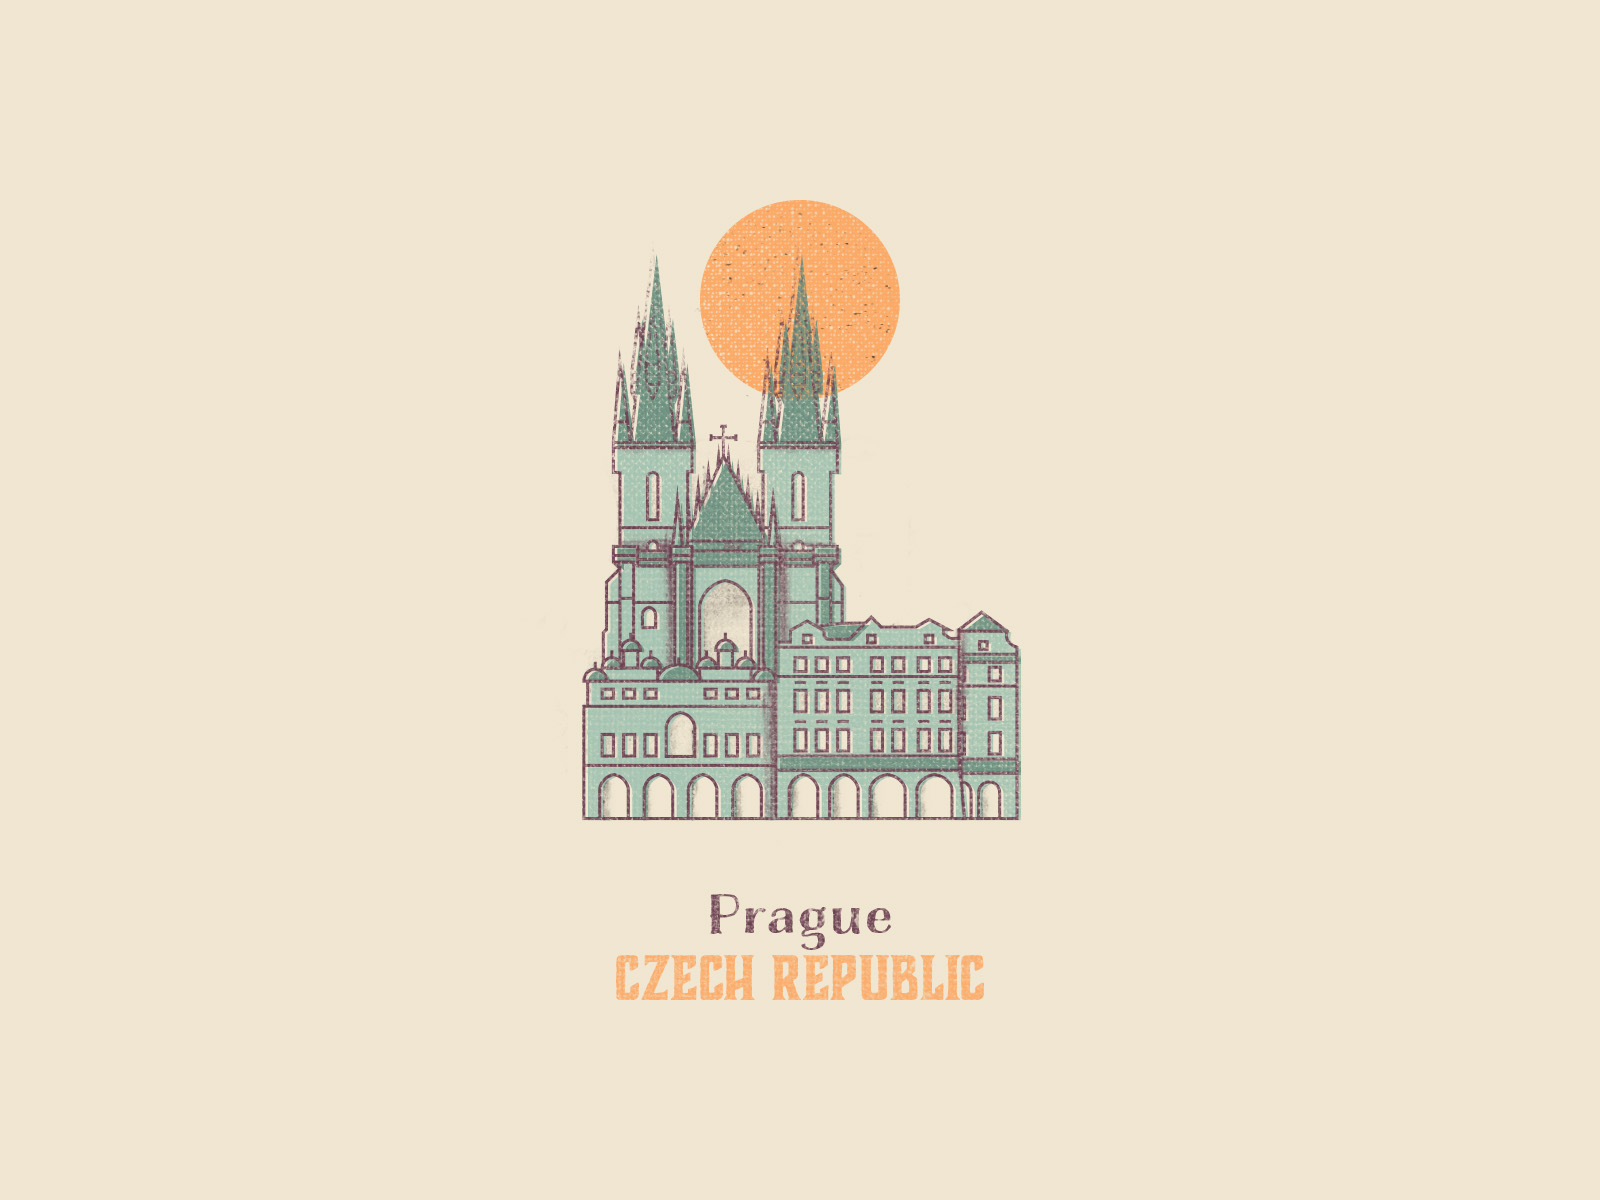 prague, czech republic